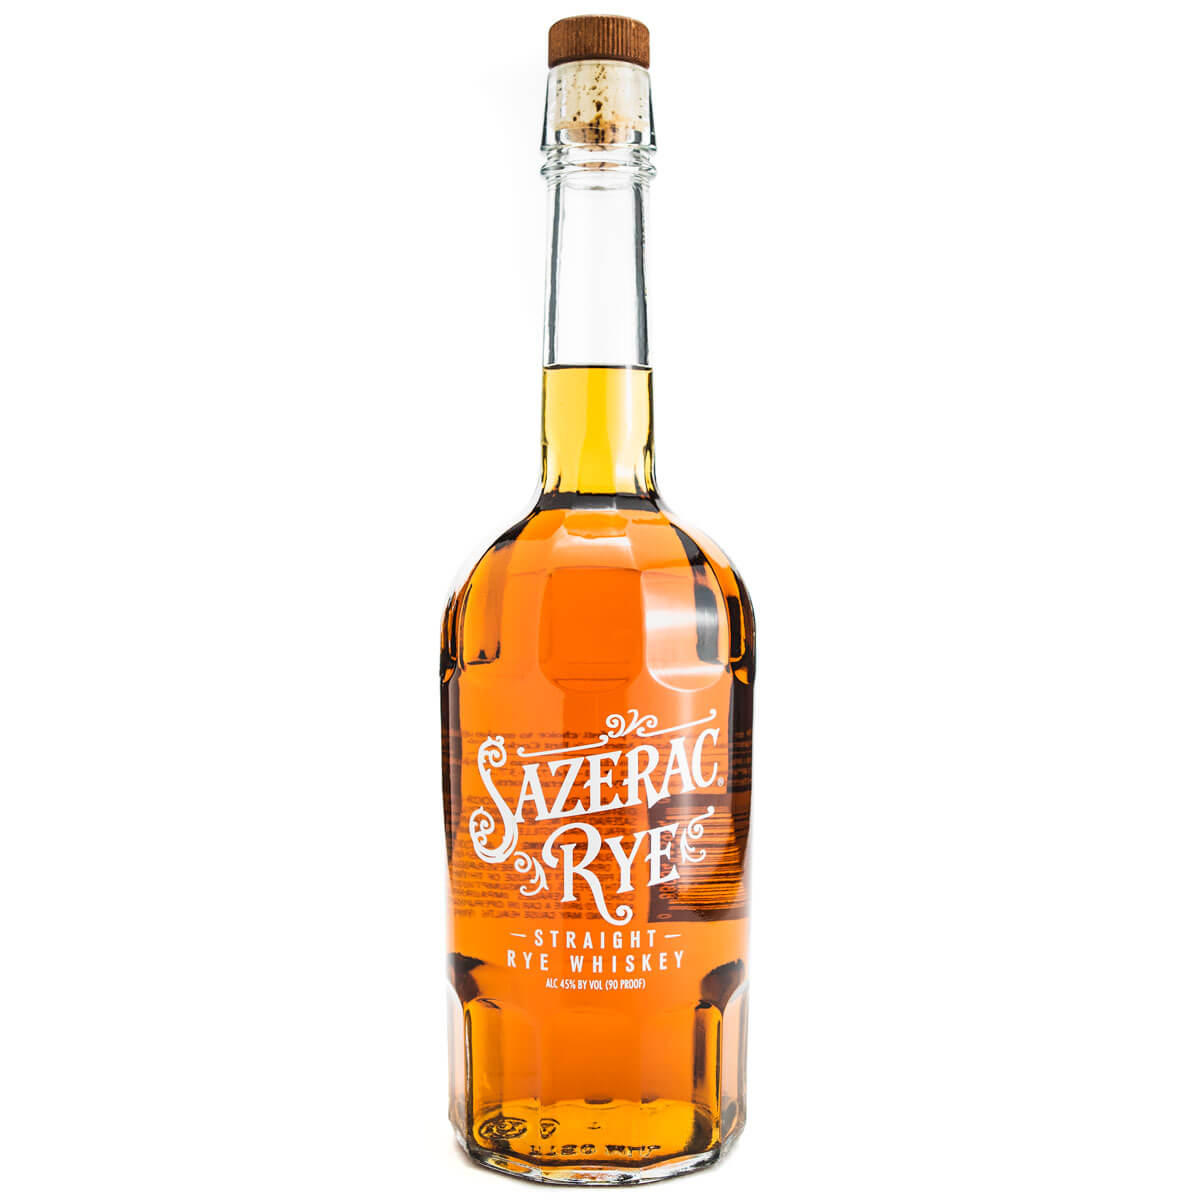 Sazerac Rye Whiskey bottle